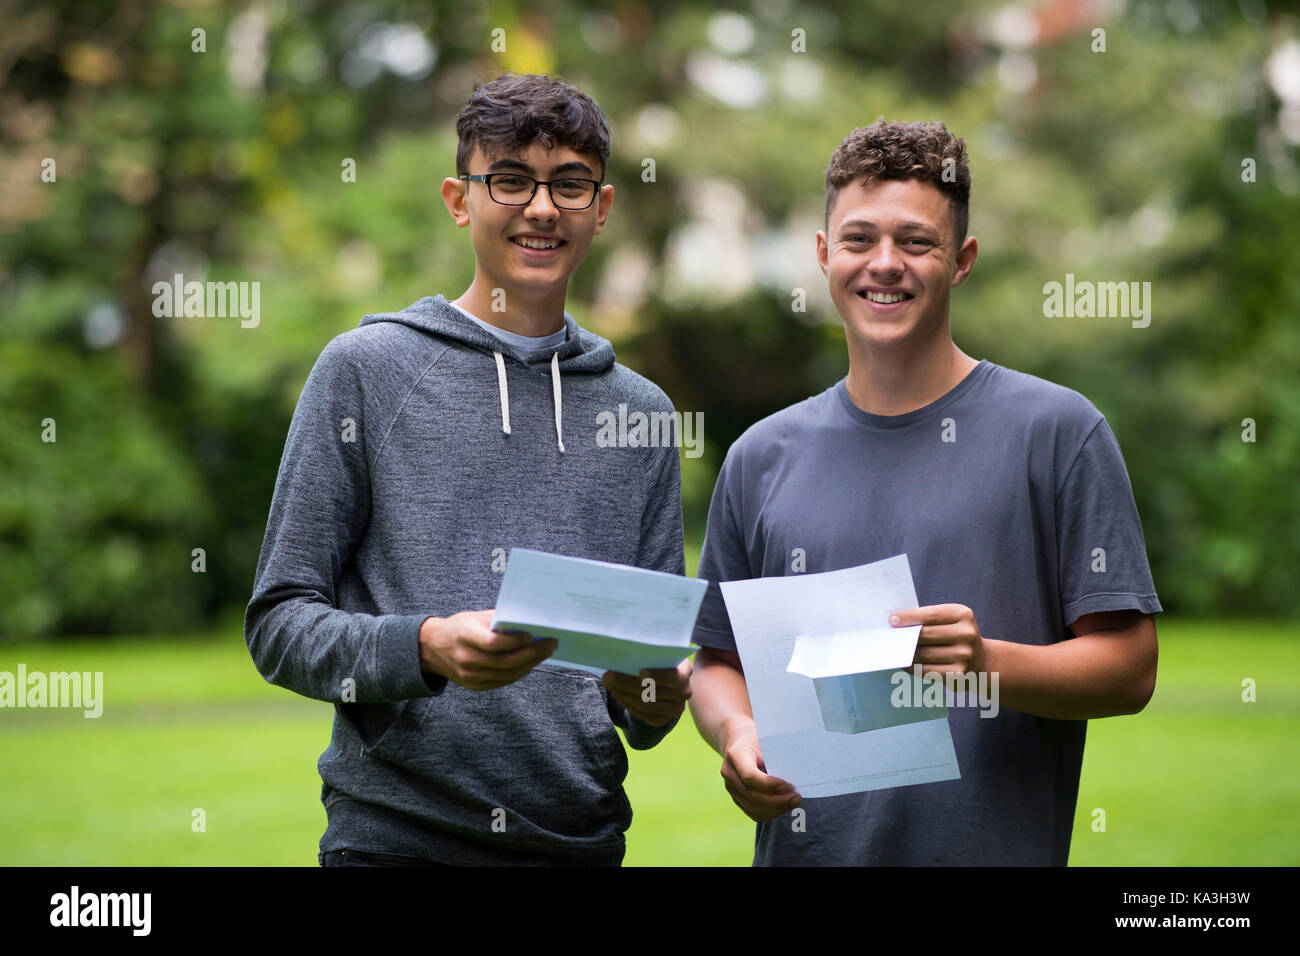 Swansea, Pays de Galles - 17 août : Adam frangakas-williams et Daniel Davies posent pour une photo après avoir reçu leurs résultats au niveau d'un ffynone house school Banque D'Images